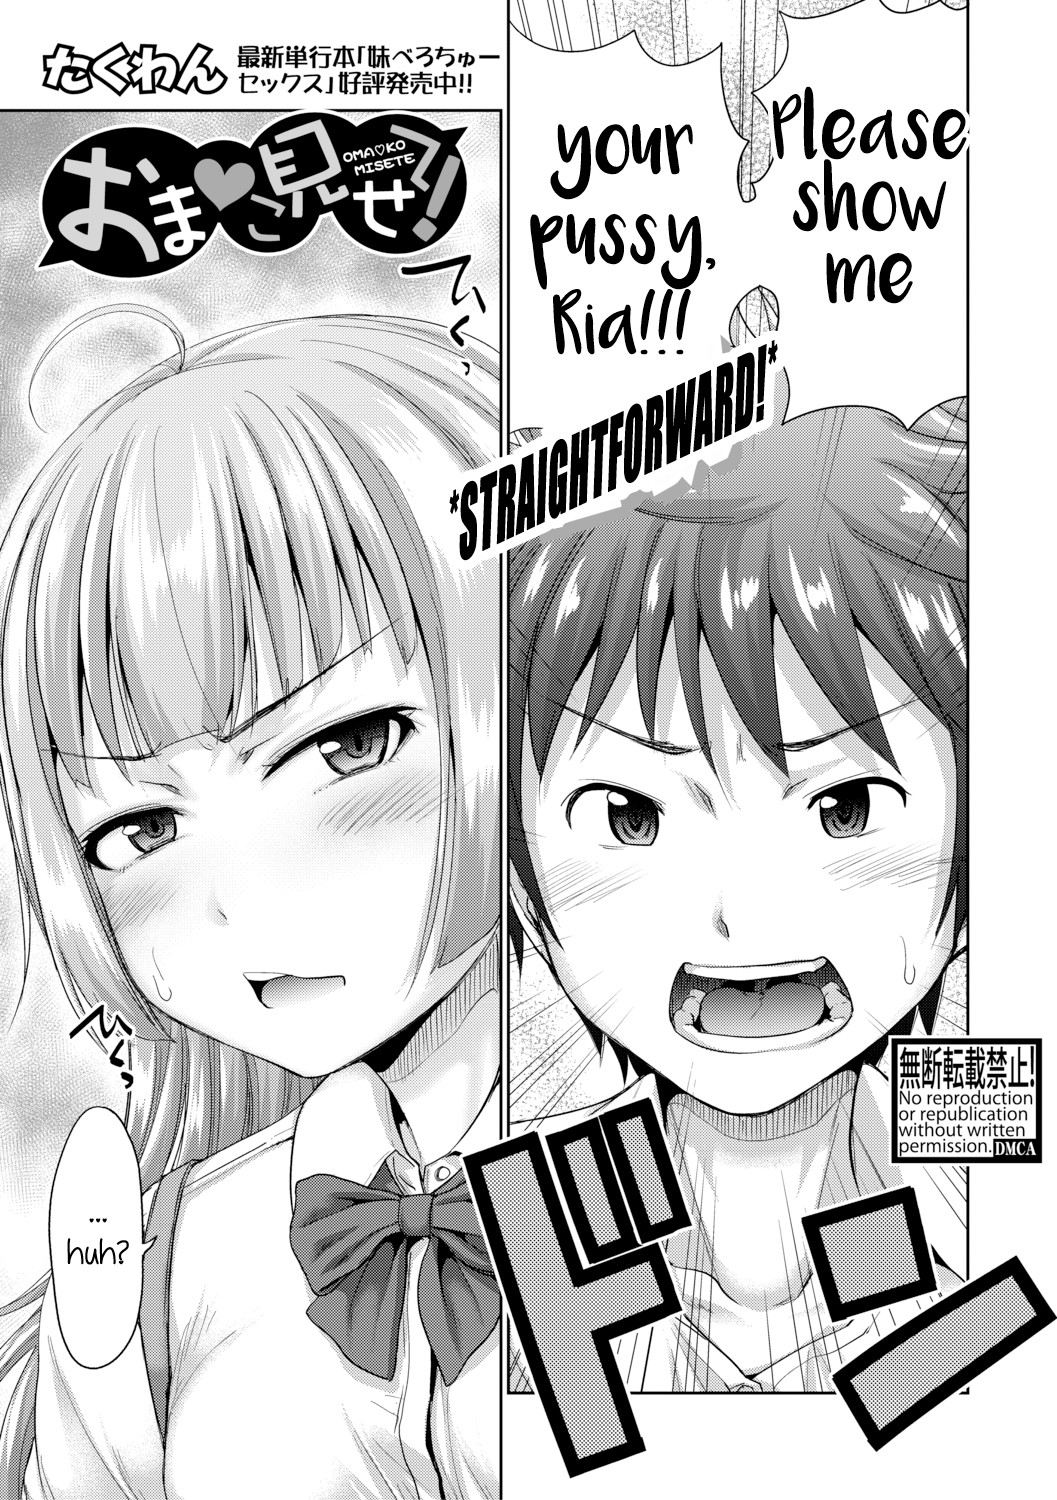 Hentai Manga Comic-Show Me Your Pussy!-Read-1